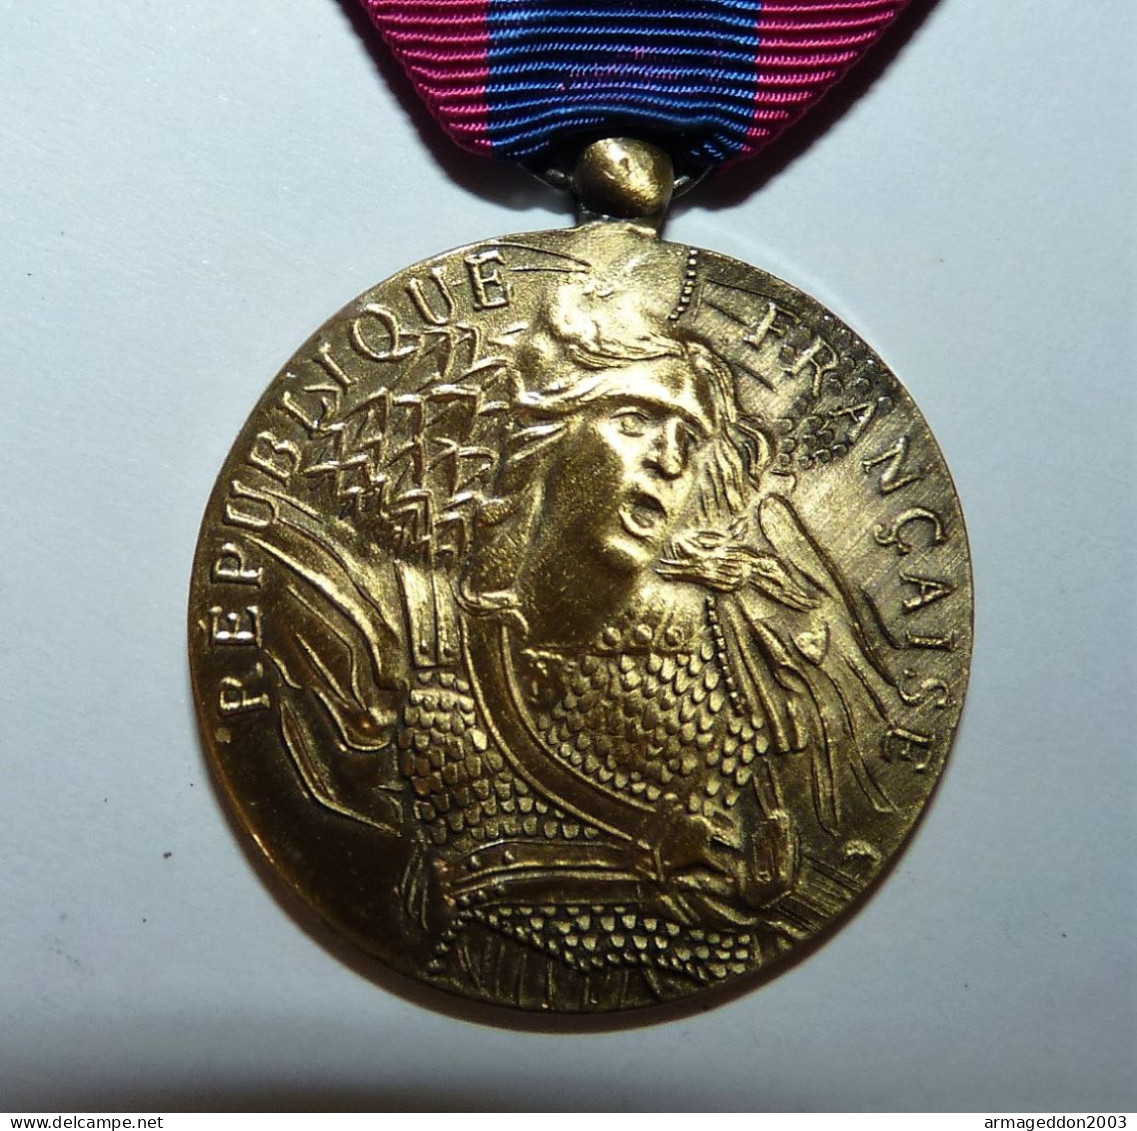 AUTHENTIQUE Medaille De Gendarmerie Francaise TBE - Police & Gendarmerie